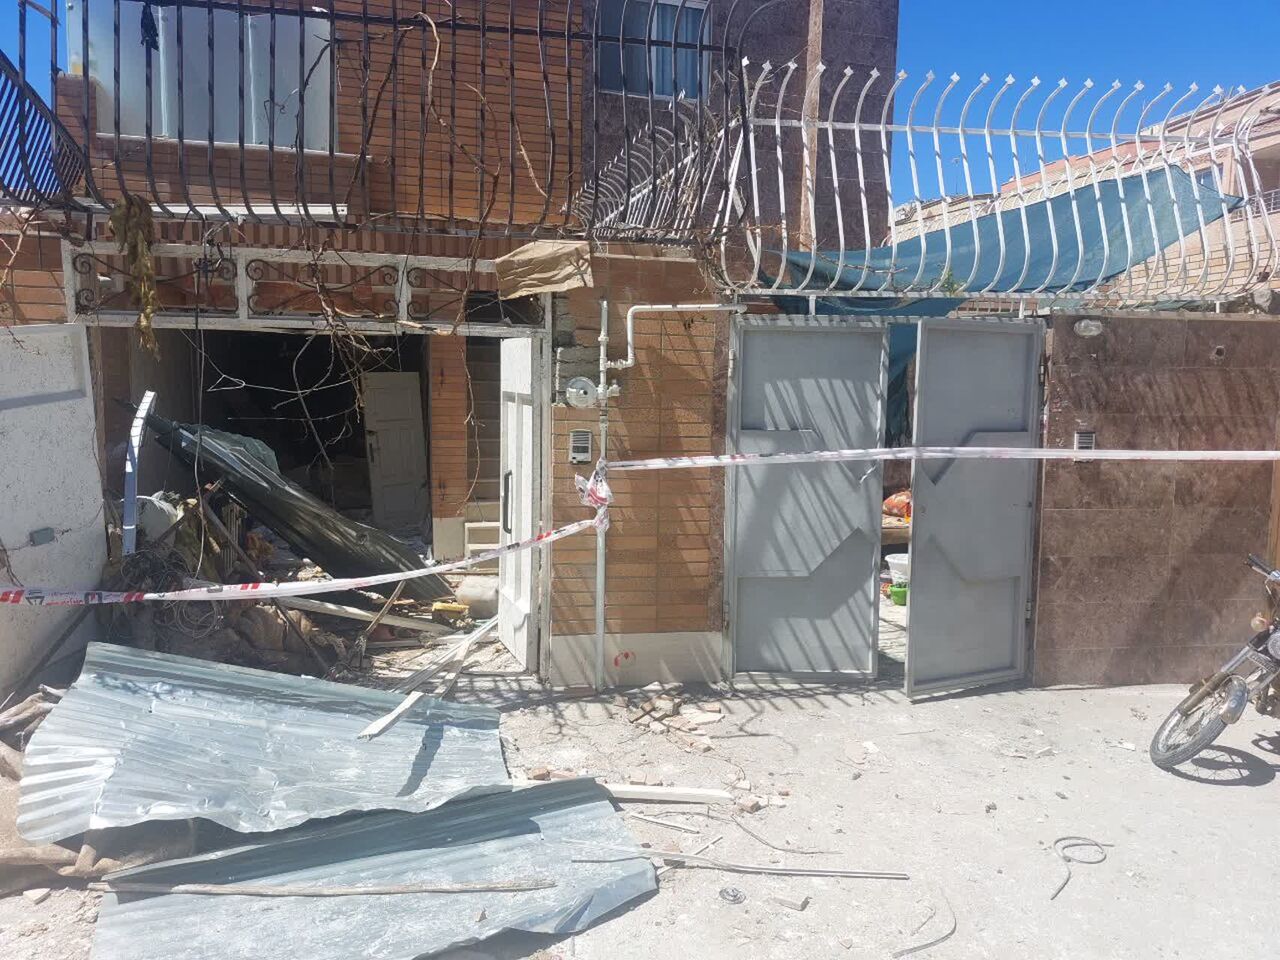 انفجار یک خانه در اصفهان به تخریب ۱۲ منزل مسکونی منجر شد